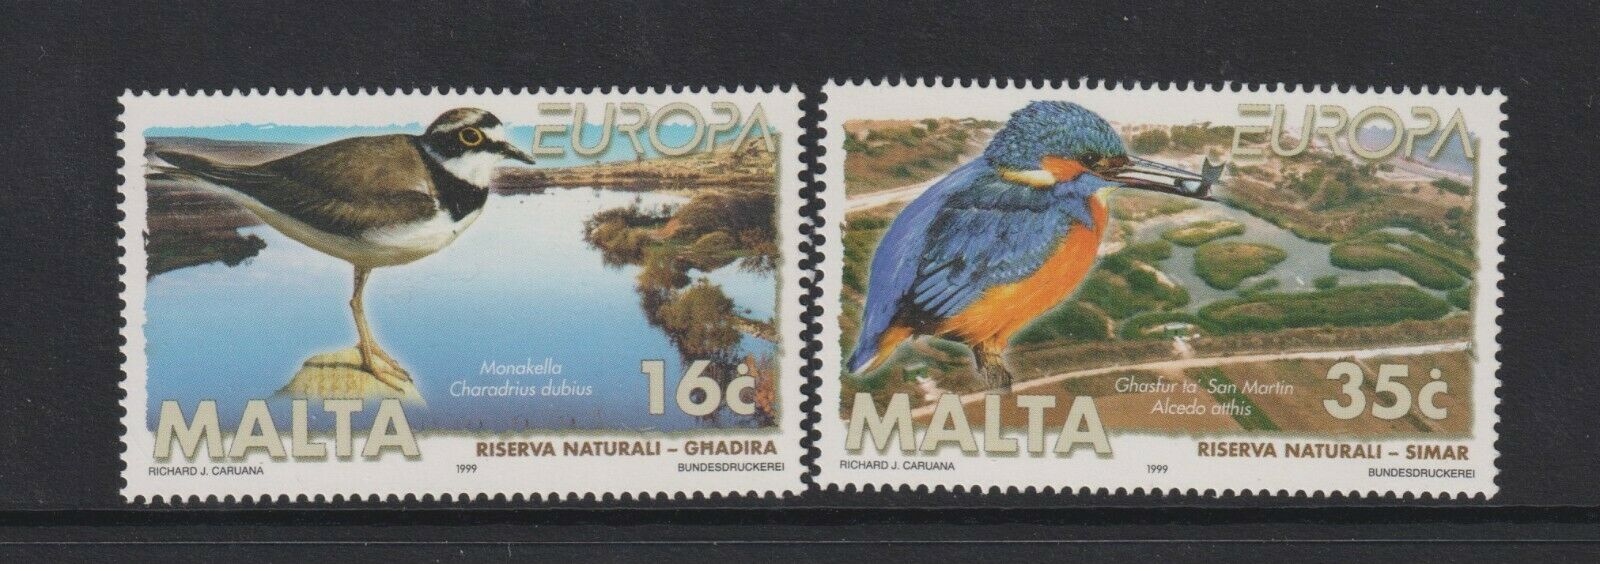 Malta - 1999, Europa, Parks & Gardens, Birds set - MNH - SG 1098/9